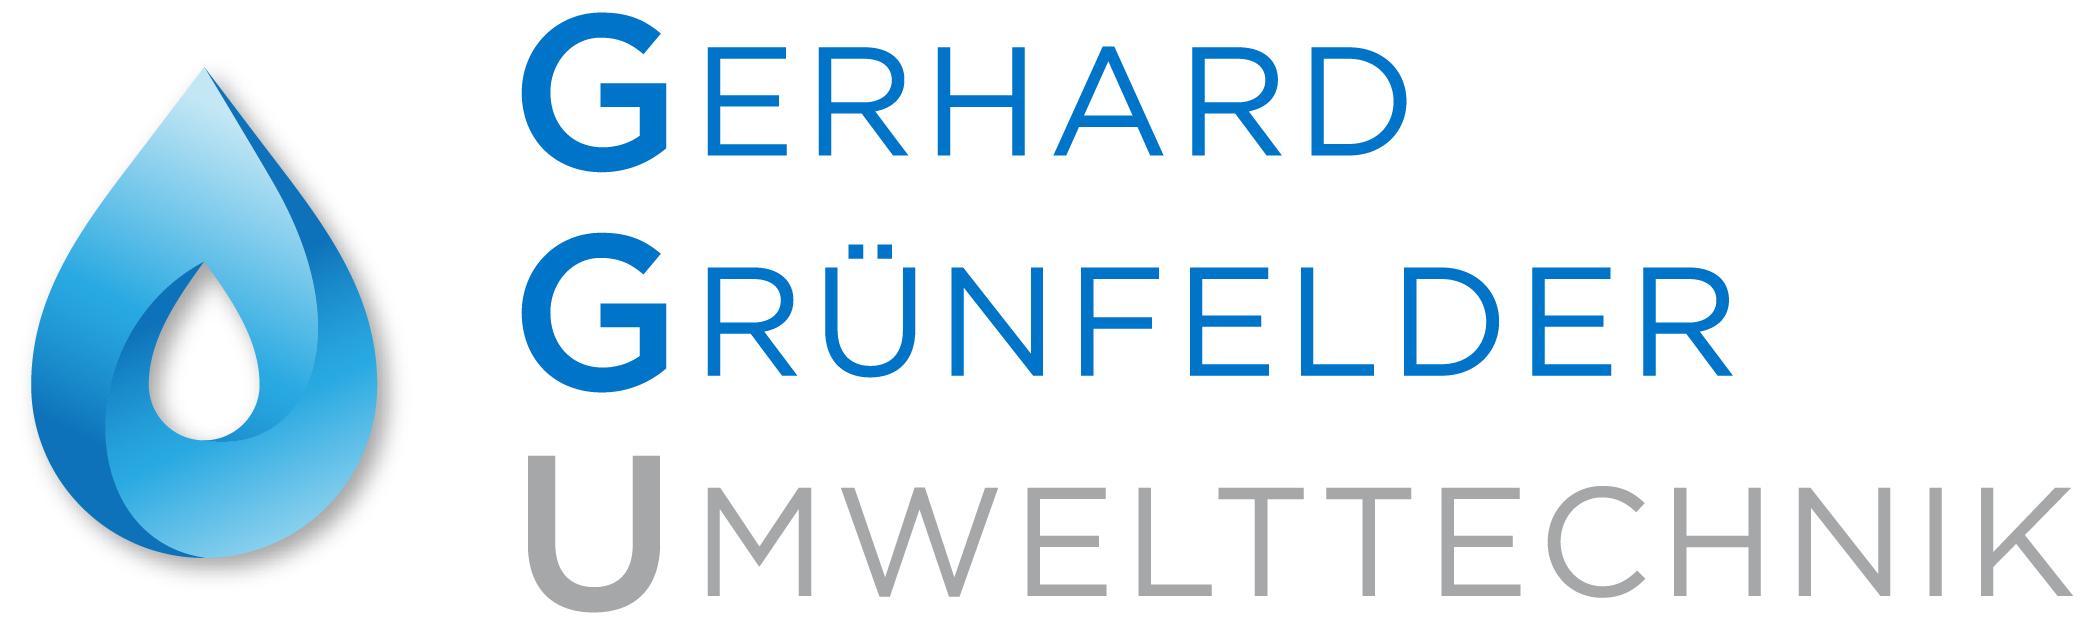 GGU - Gerhard Grünfelder Umwelttechnik